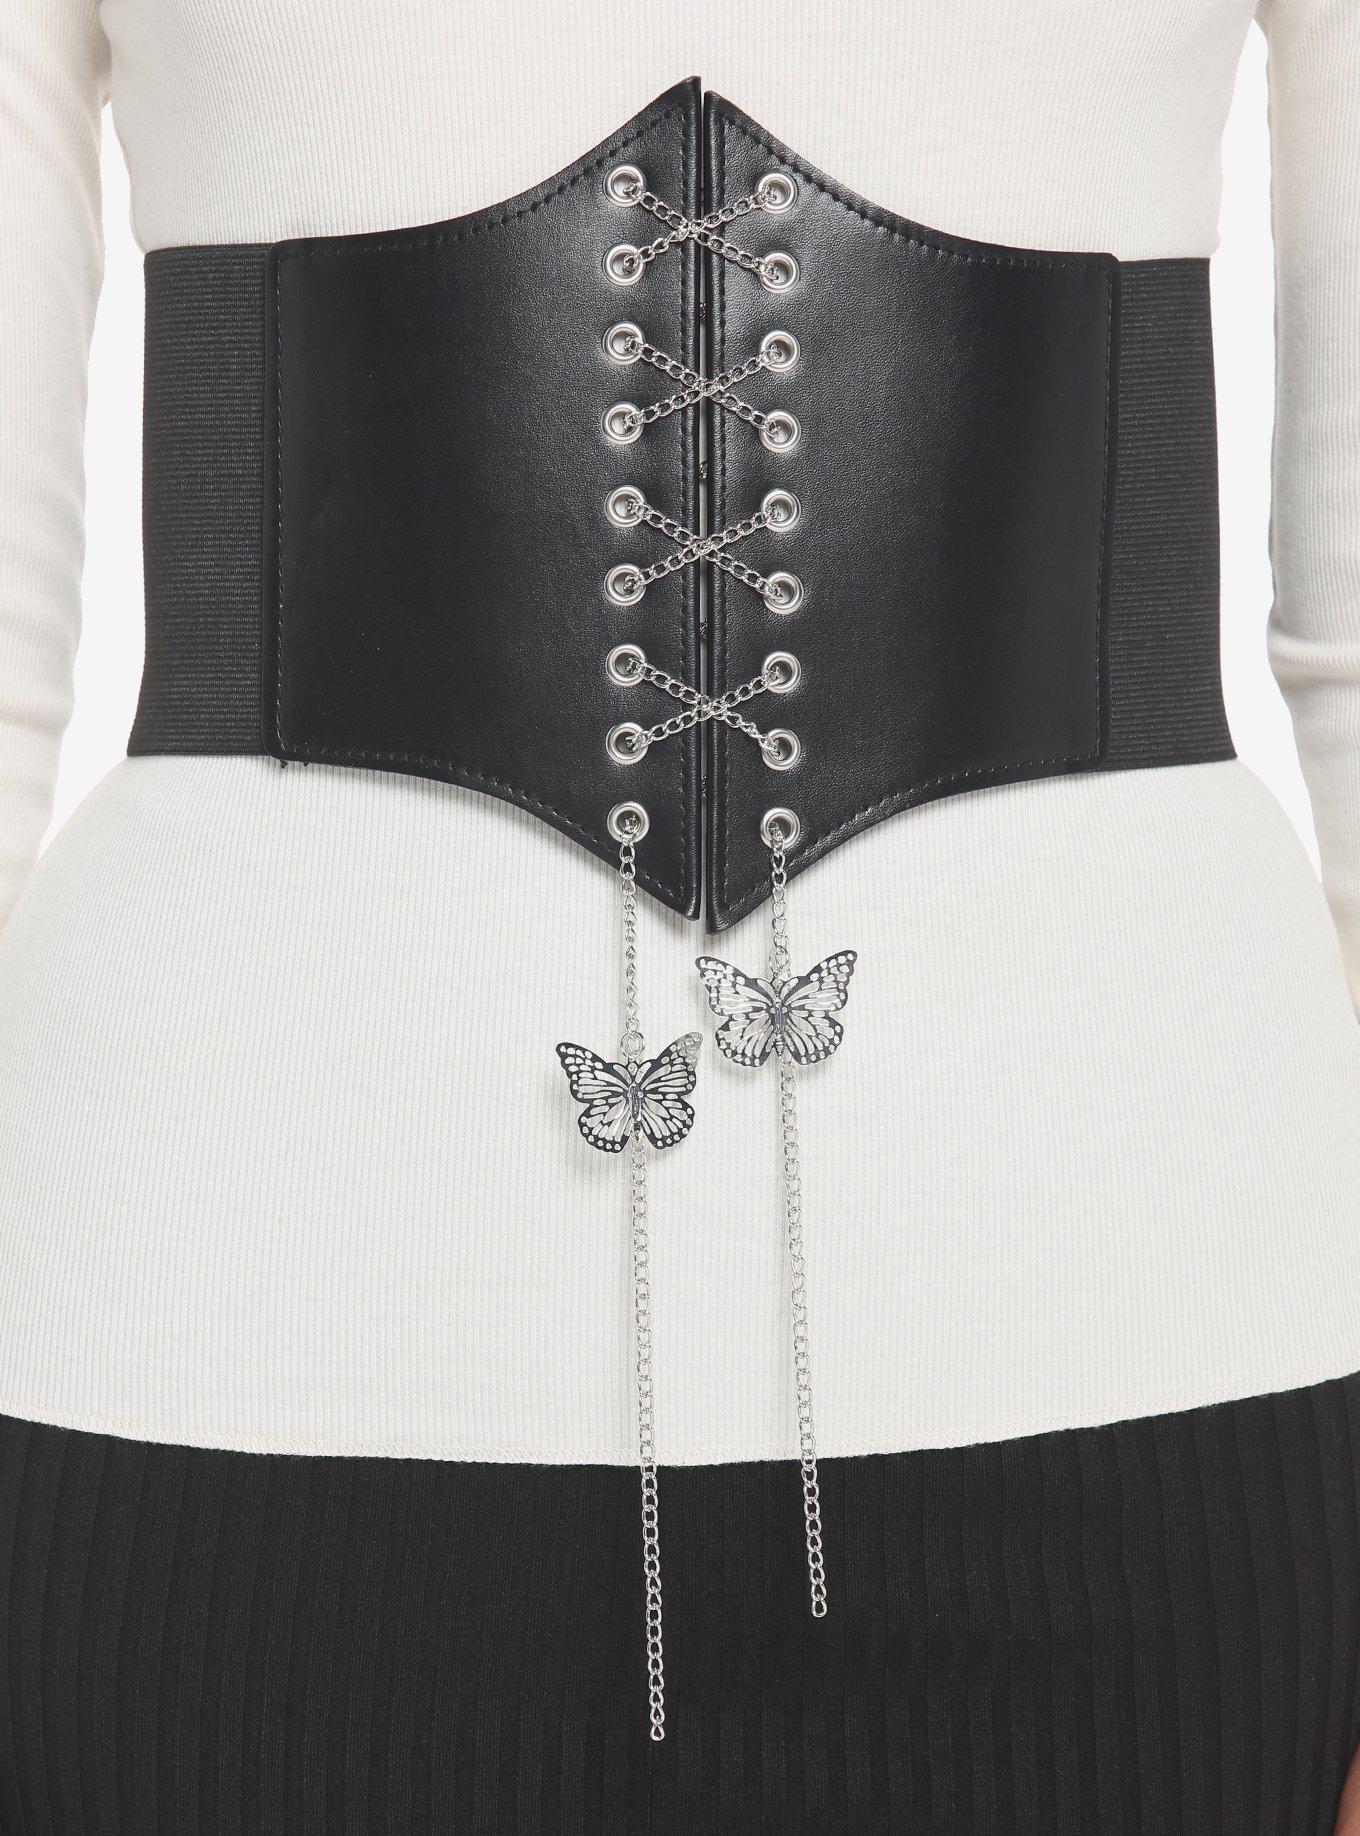 corset recs. : r/corsets